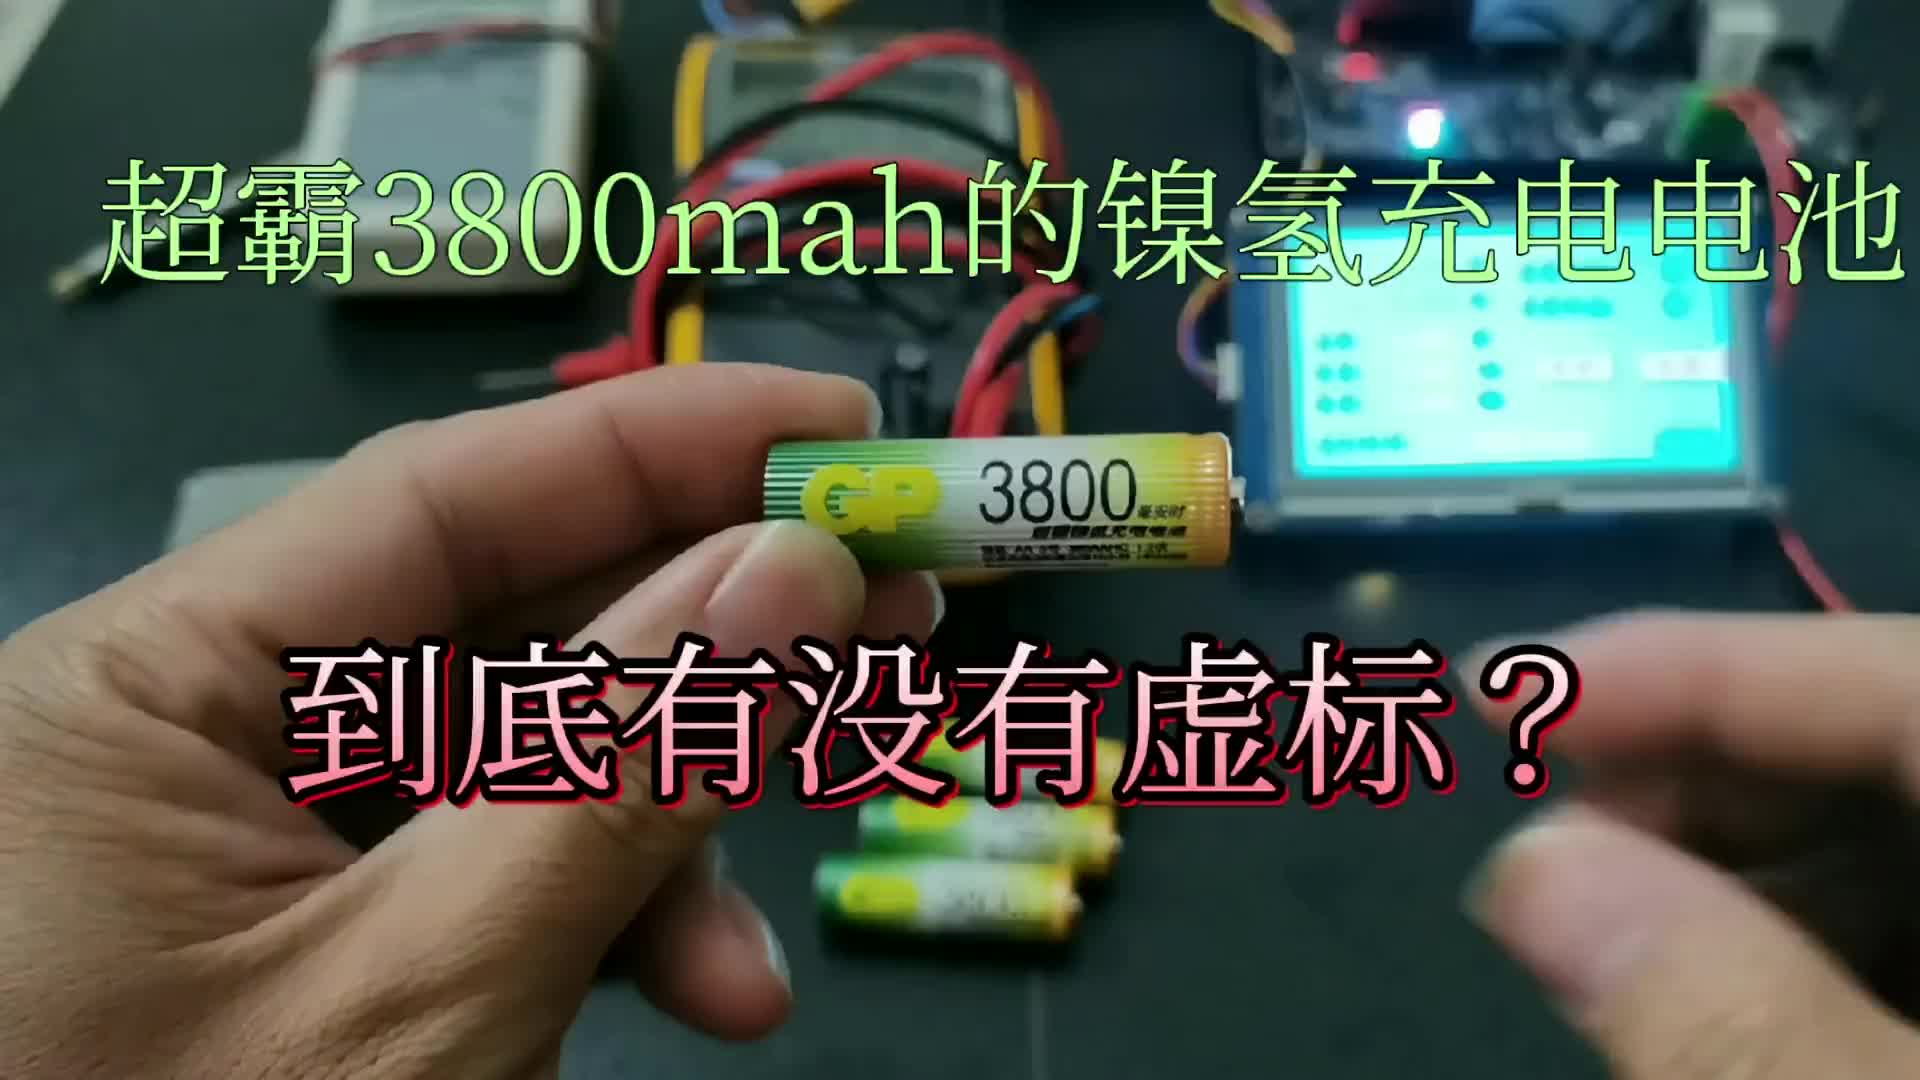 00041 超霸3800mah的镍氢充电电池，到底有没有虚标？ #镍氢电池 #充电电池 #超霸 #容量 